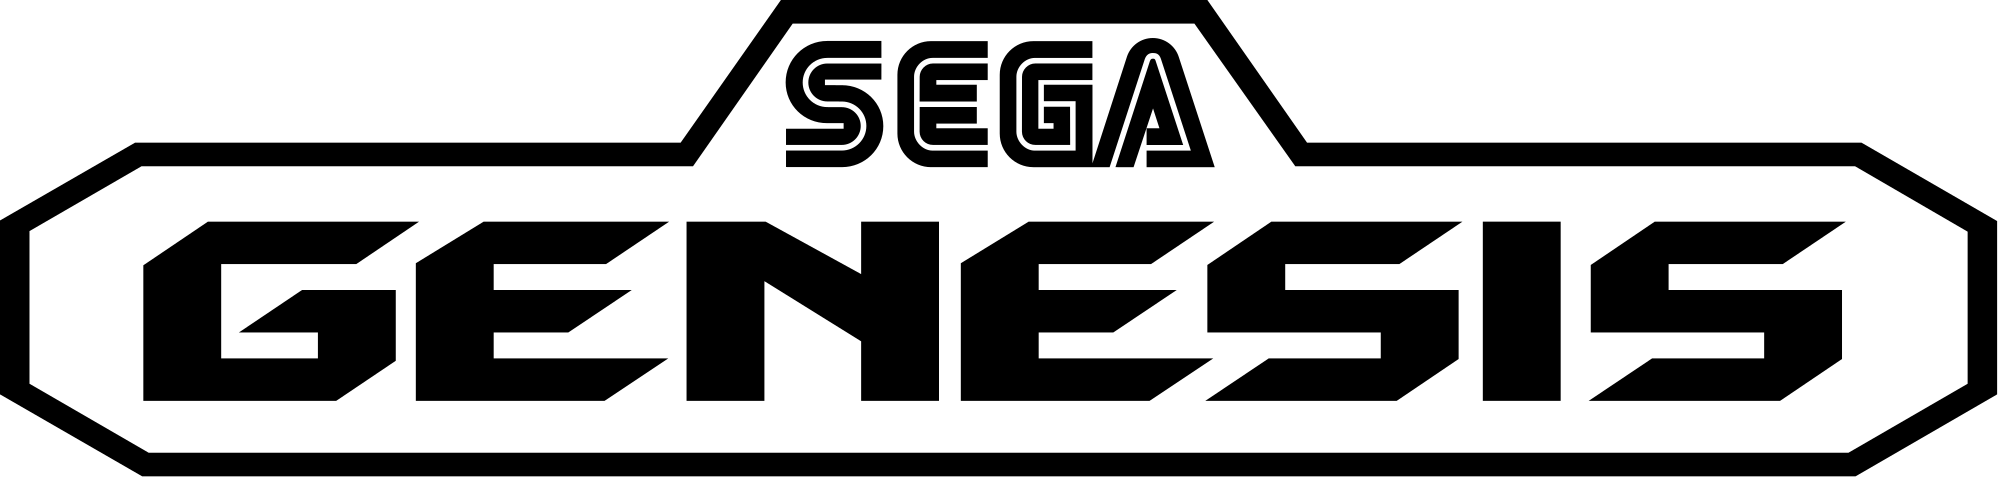 2000px-Sega_genesis_logo.svg.png